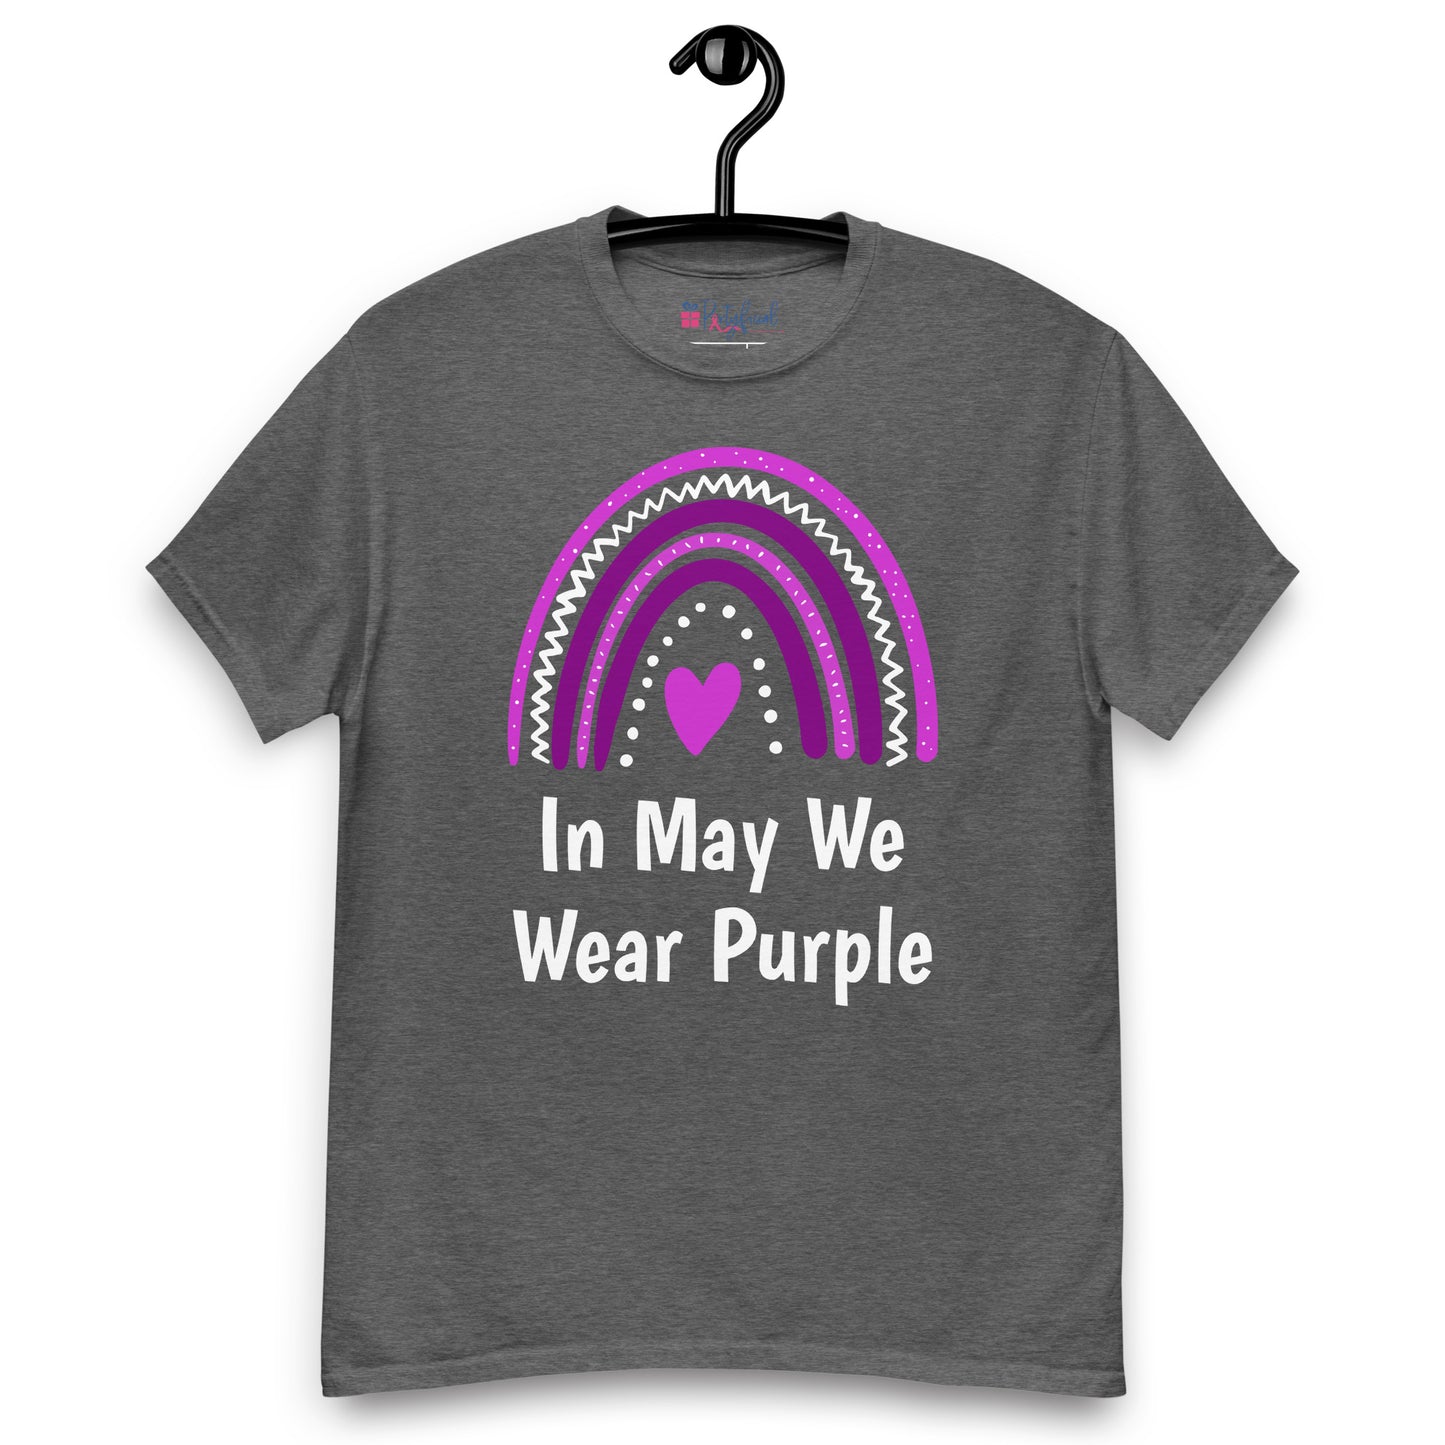 In May We Wear Purple tee